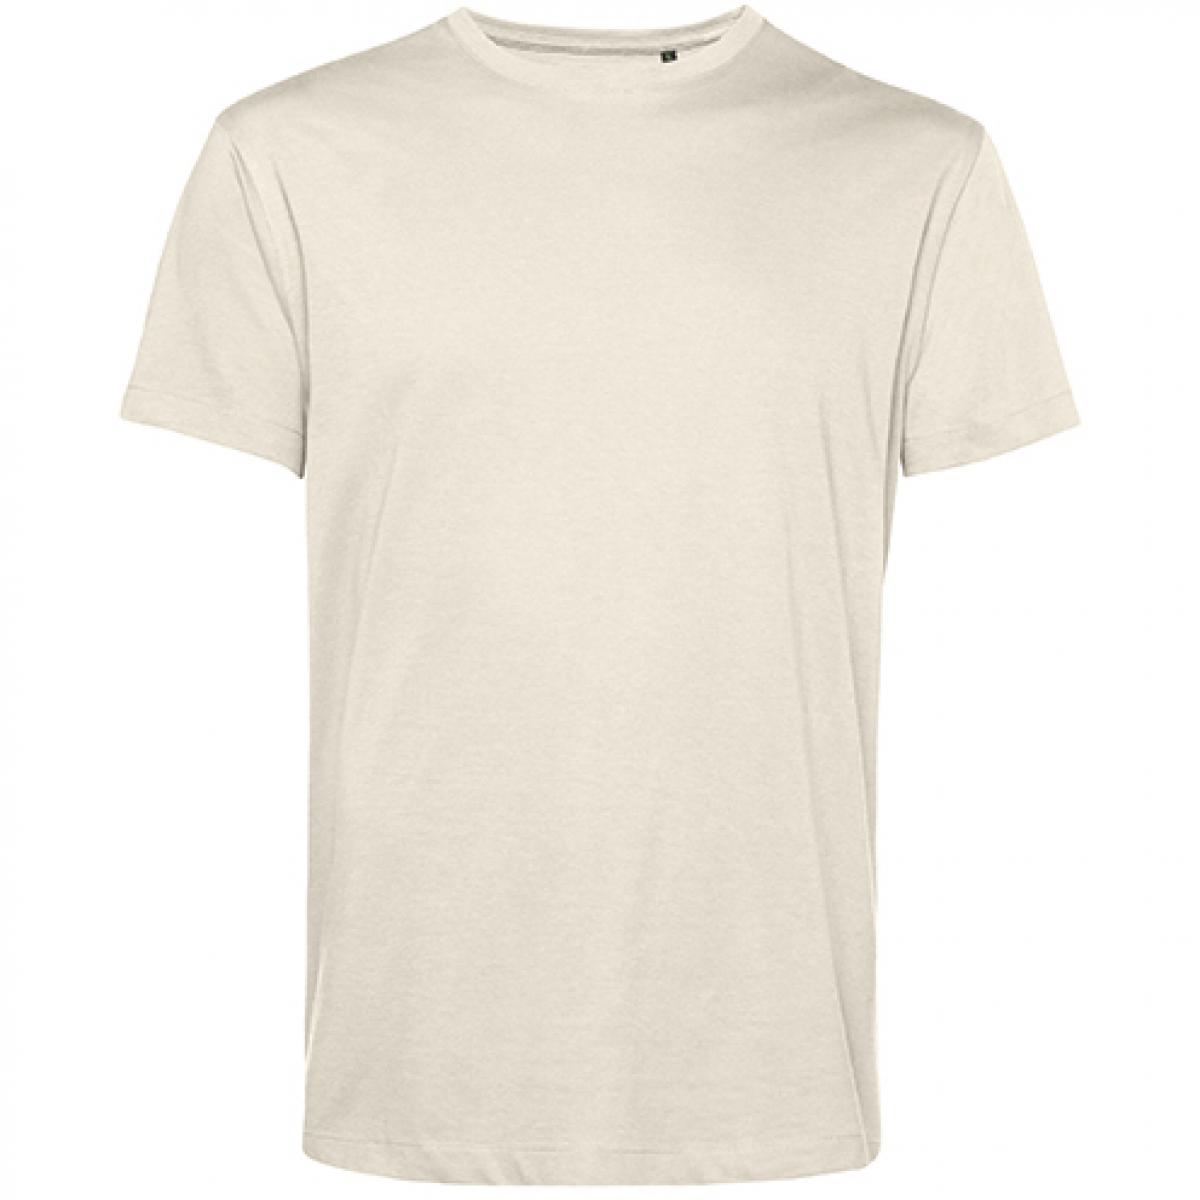 Hersteller: B&C Herstellernummer: TU01B Artikelbezeichnung: #Organic E150 T-Shirt - 100 % sanforisierte Bio-Baumwolle Farbe: Off White